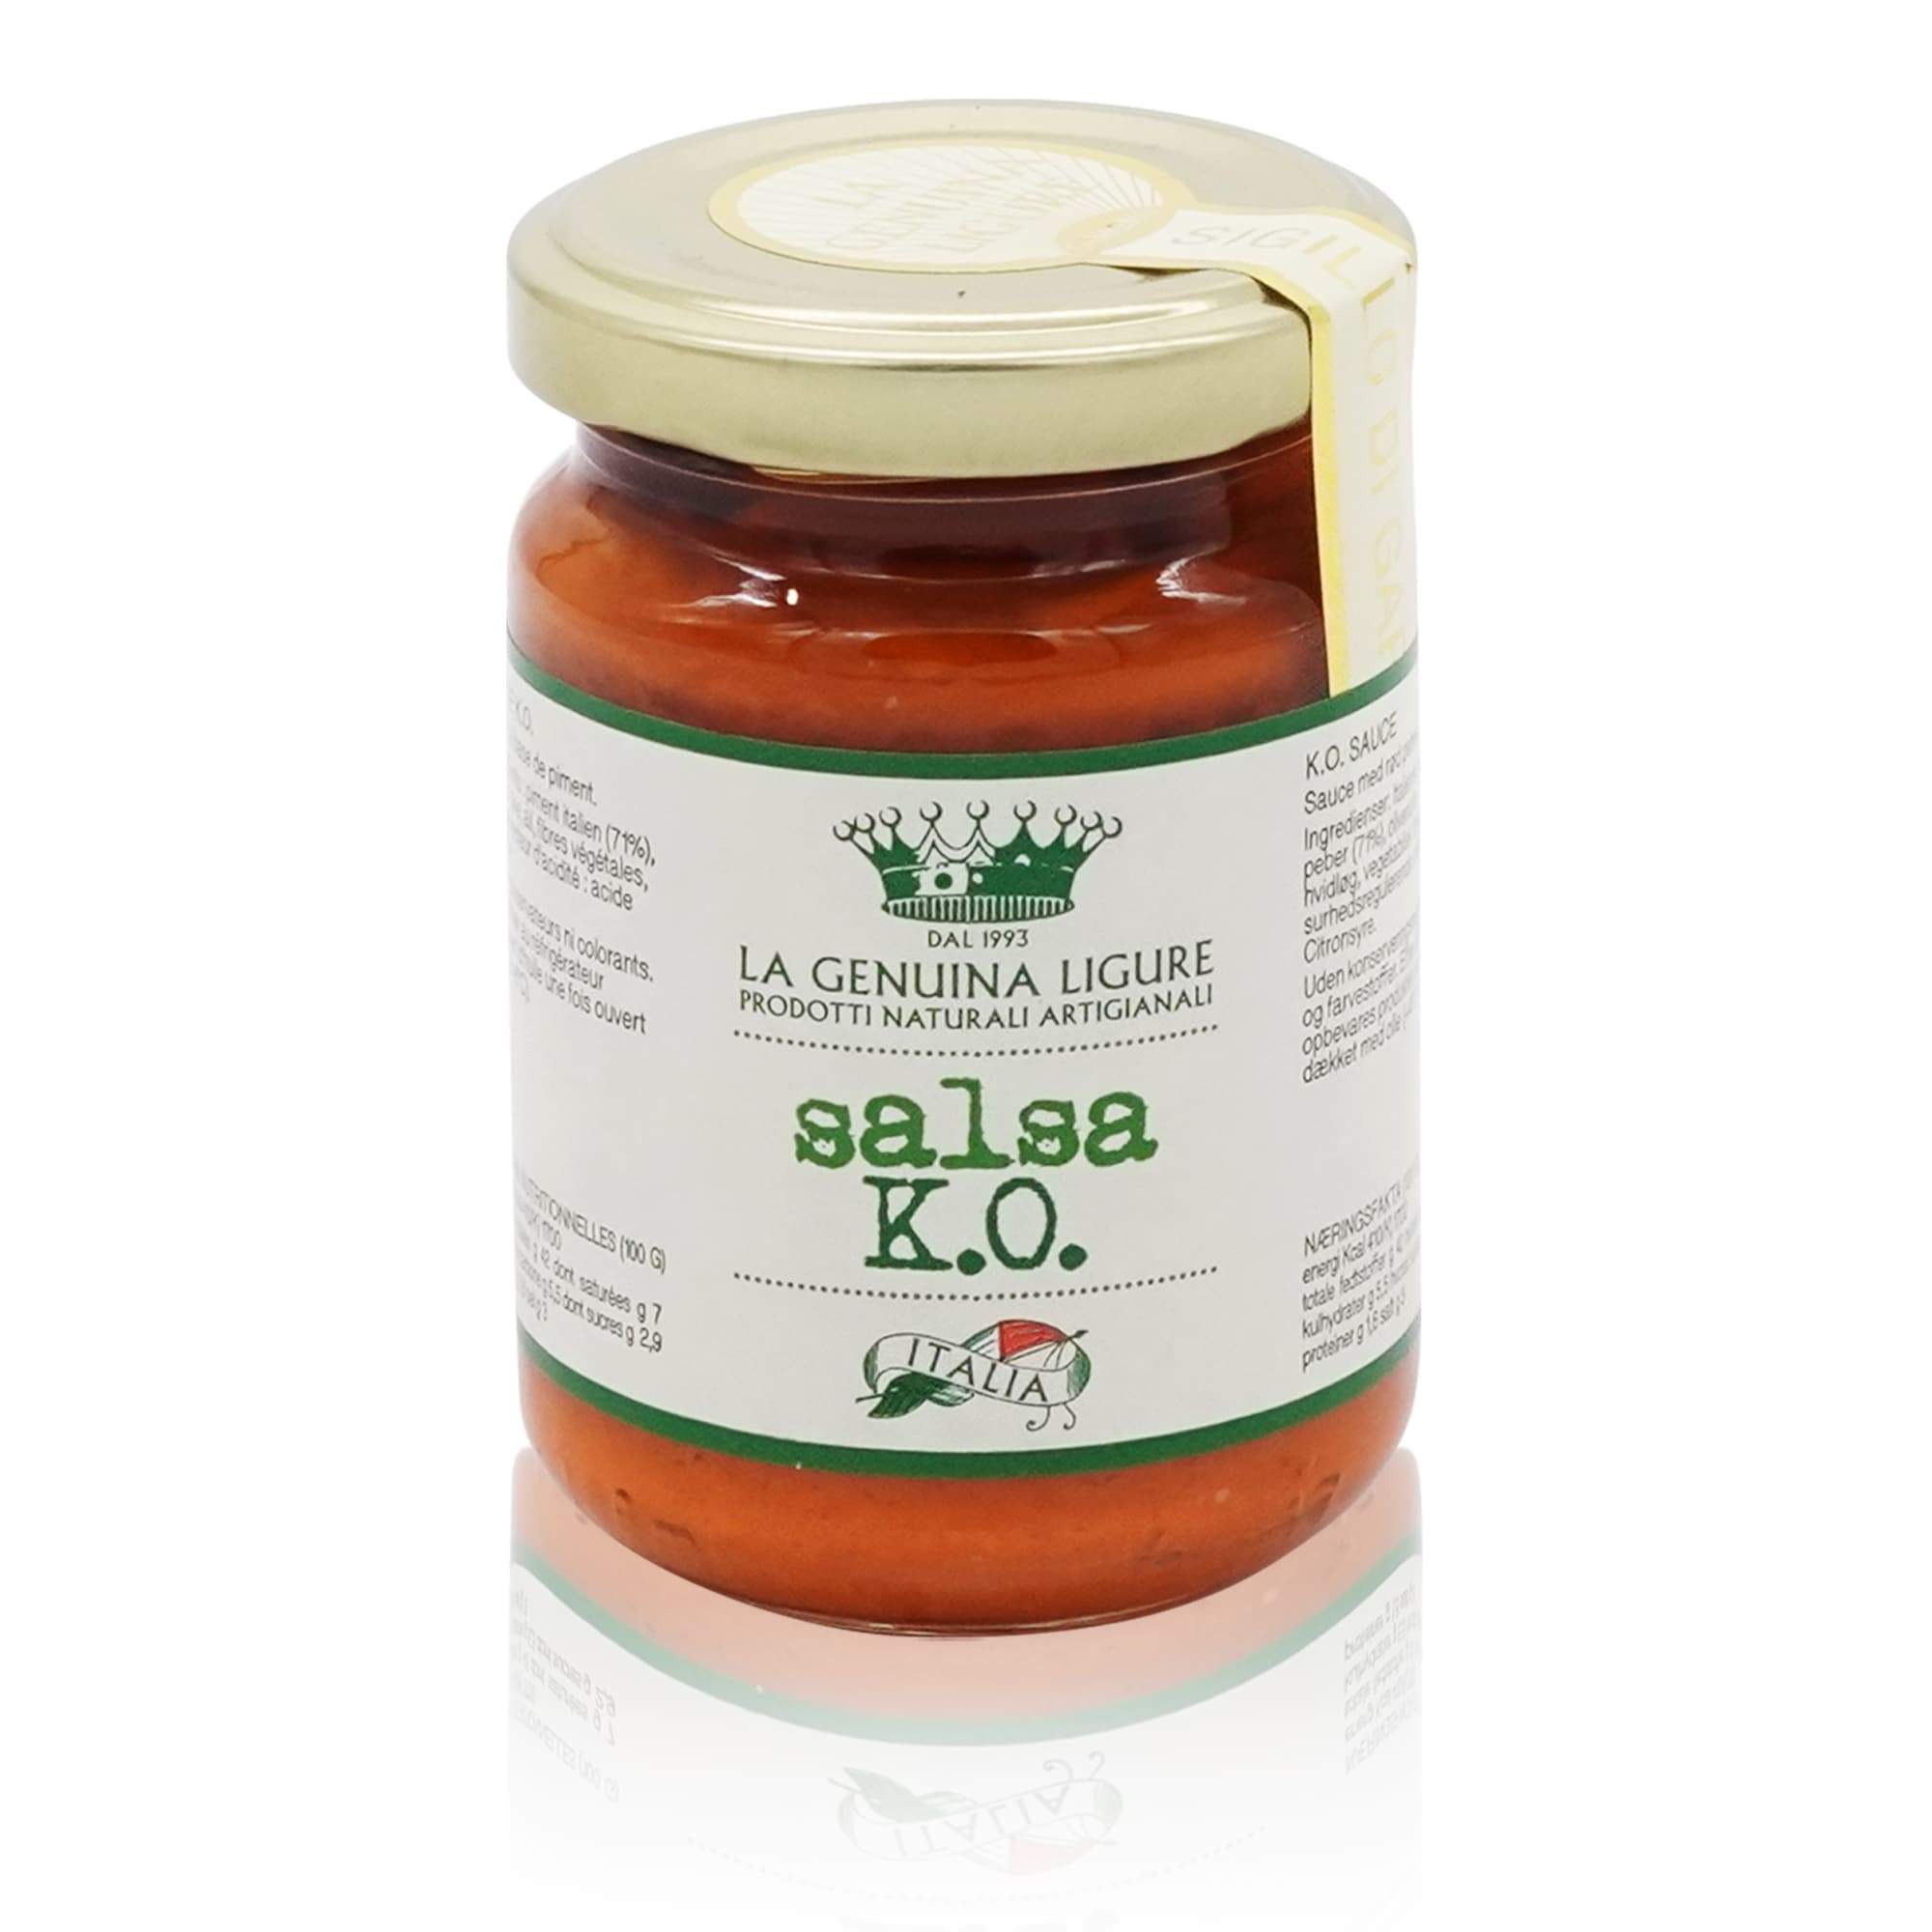 LA GENUINE LIGURE Salsa K.O. – KO Sauce - 0,13kg